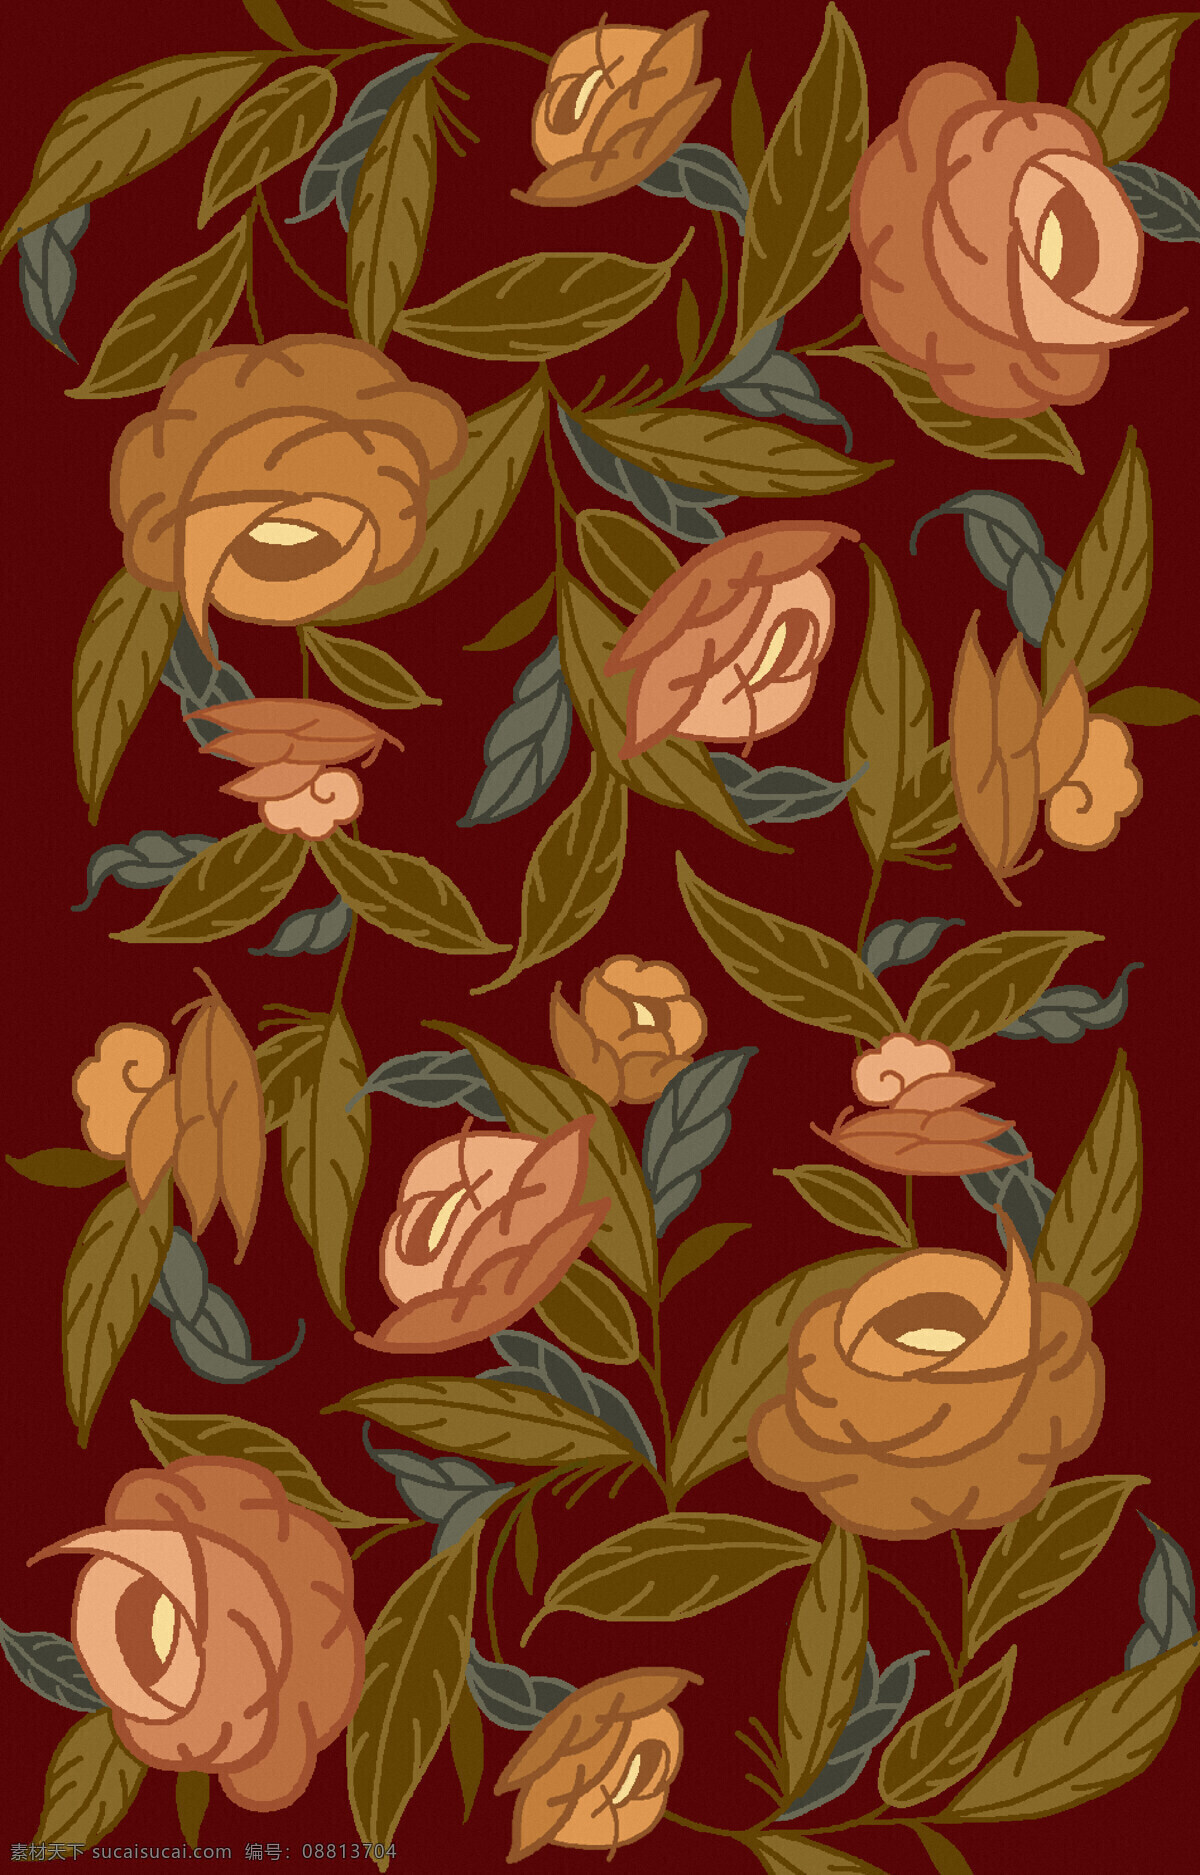 纺织面料 沙发布艺 纹饰 纹样 地毯图案设计 花卉植物围边 满铺 底纹边框 背景底纹